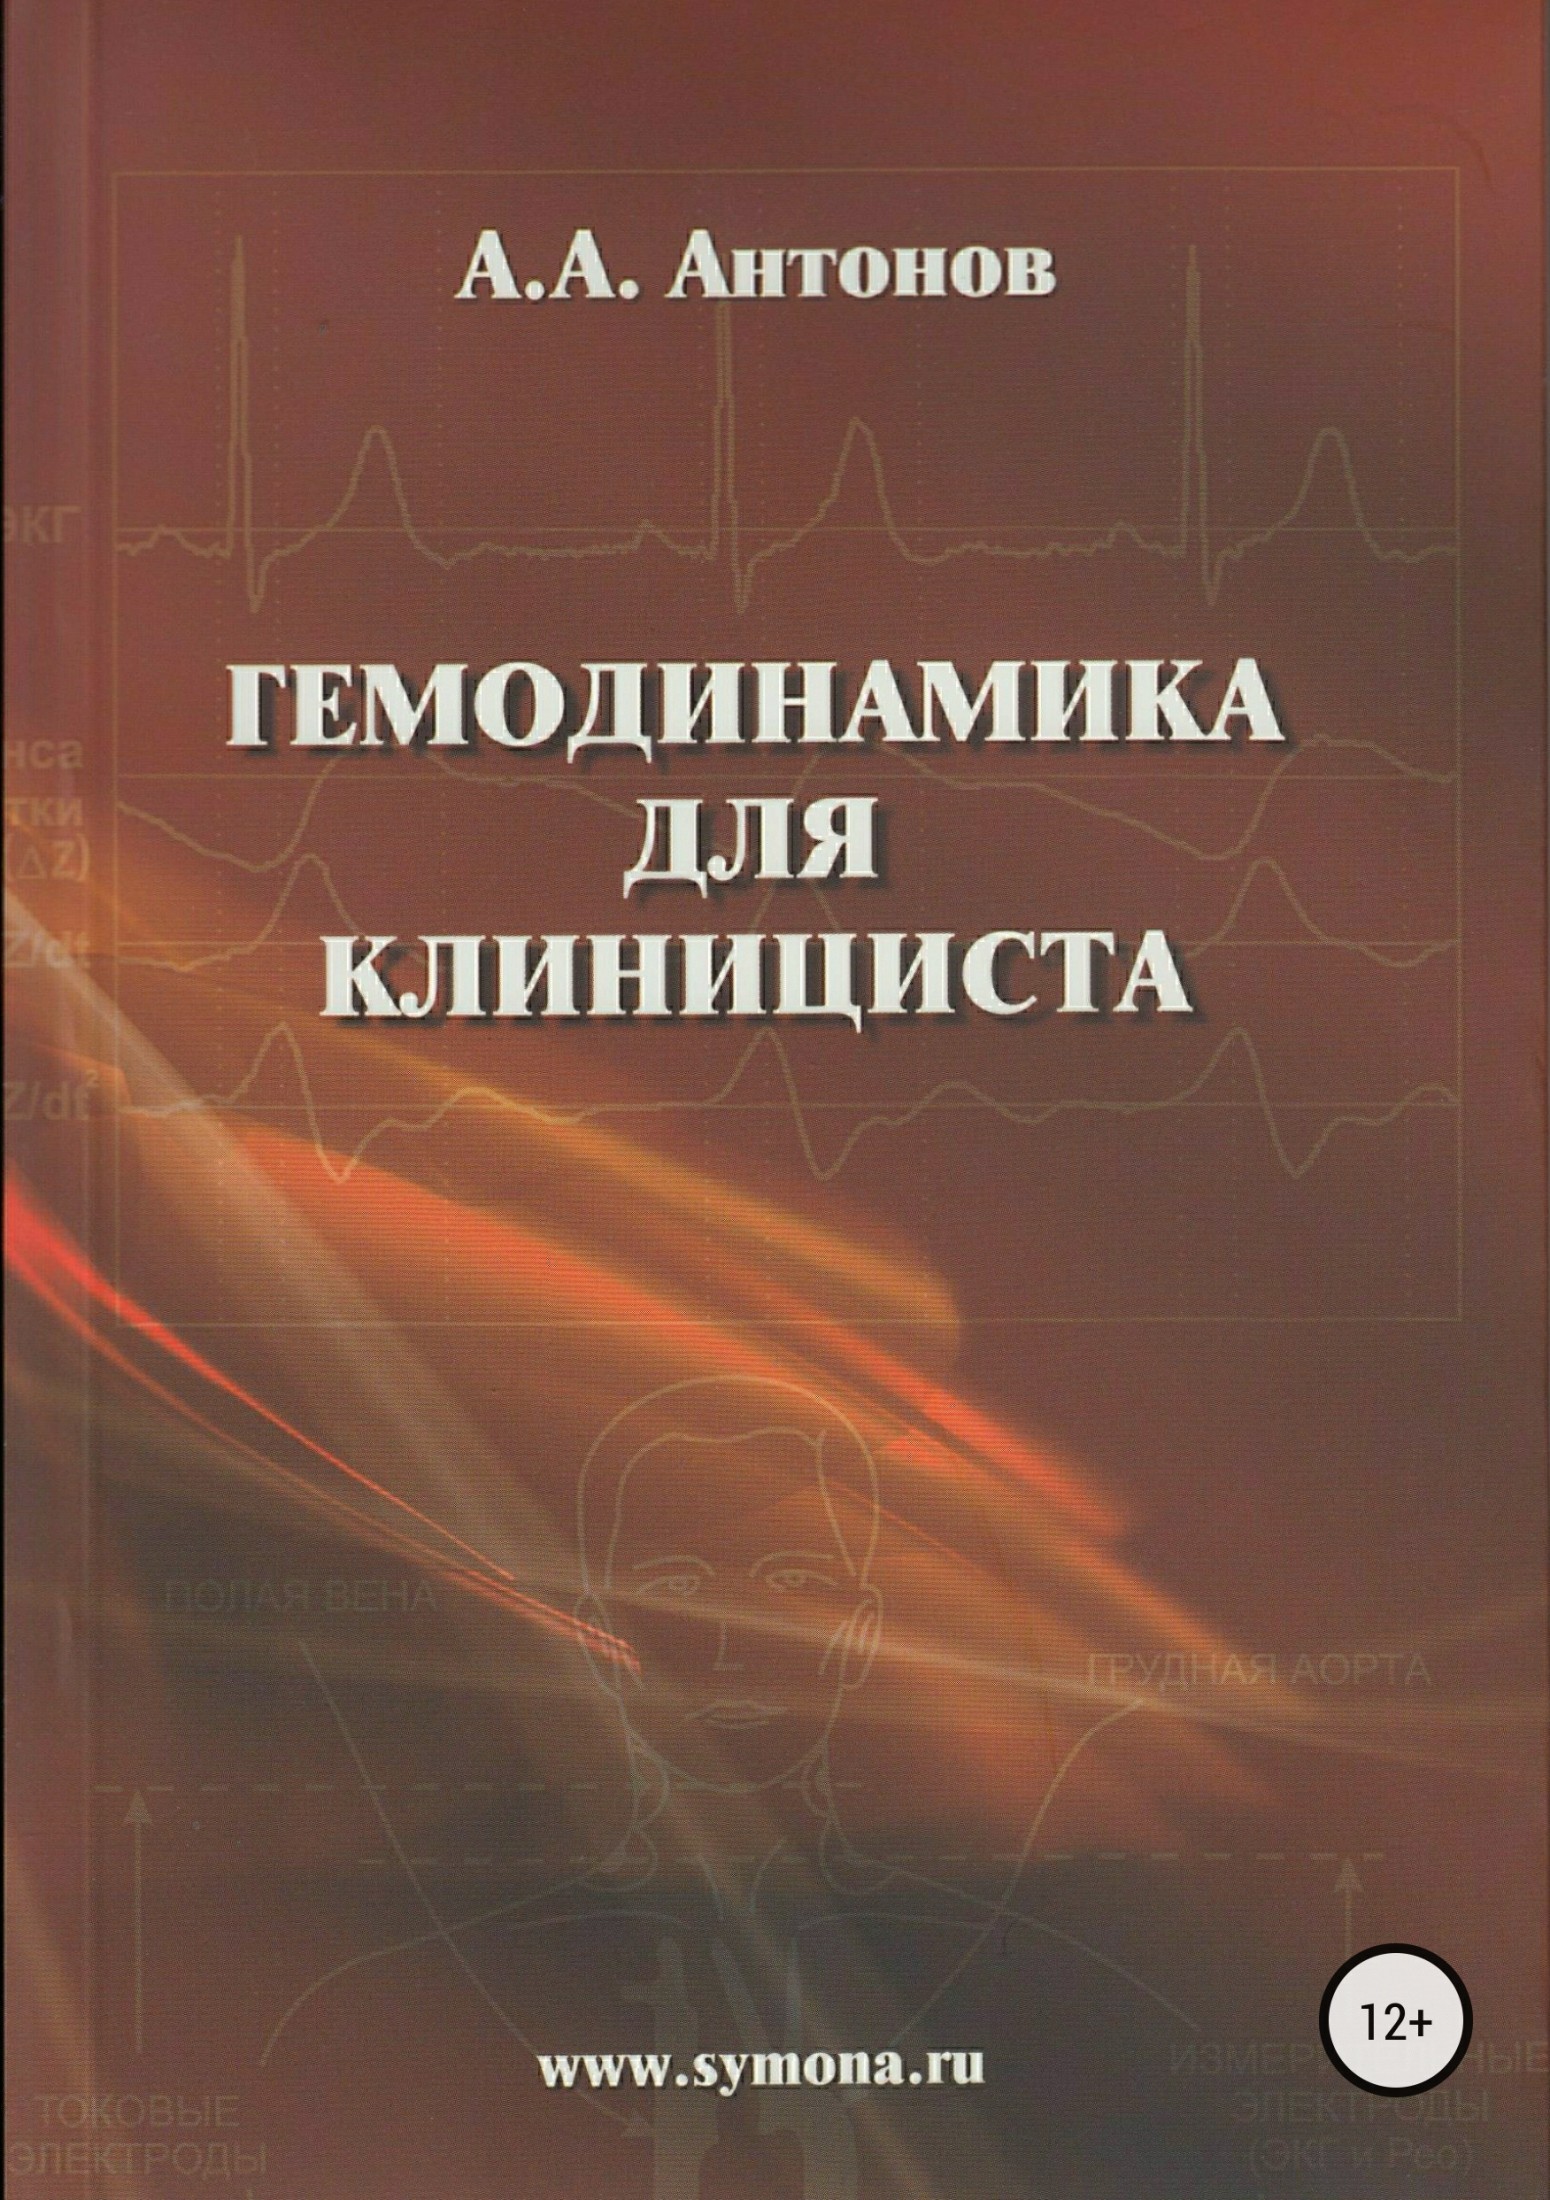 Книга Гемодинамика для клинициста из серии , созданная Александр Антонов, может относится к жанру Медицина, Медицина, Биология. Стоимость книги Гемодинамика для клинициста  с идентификатором 30796633 составляет 299.00 руб.